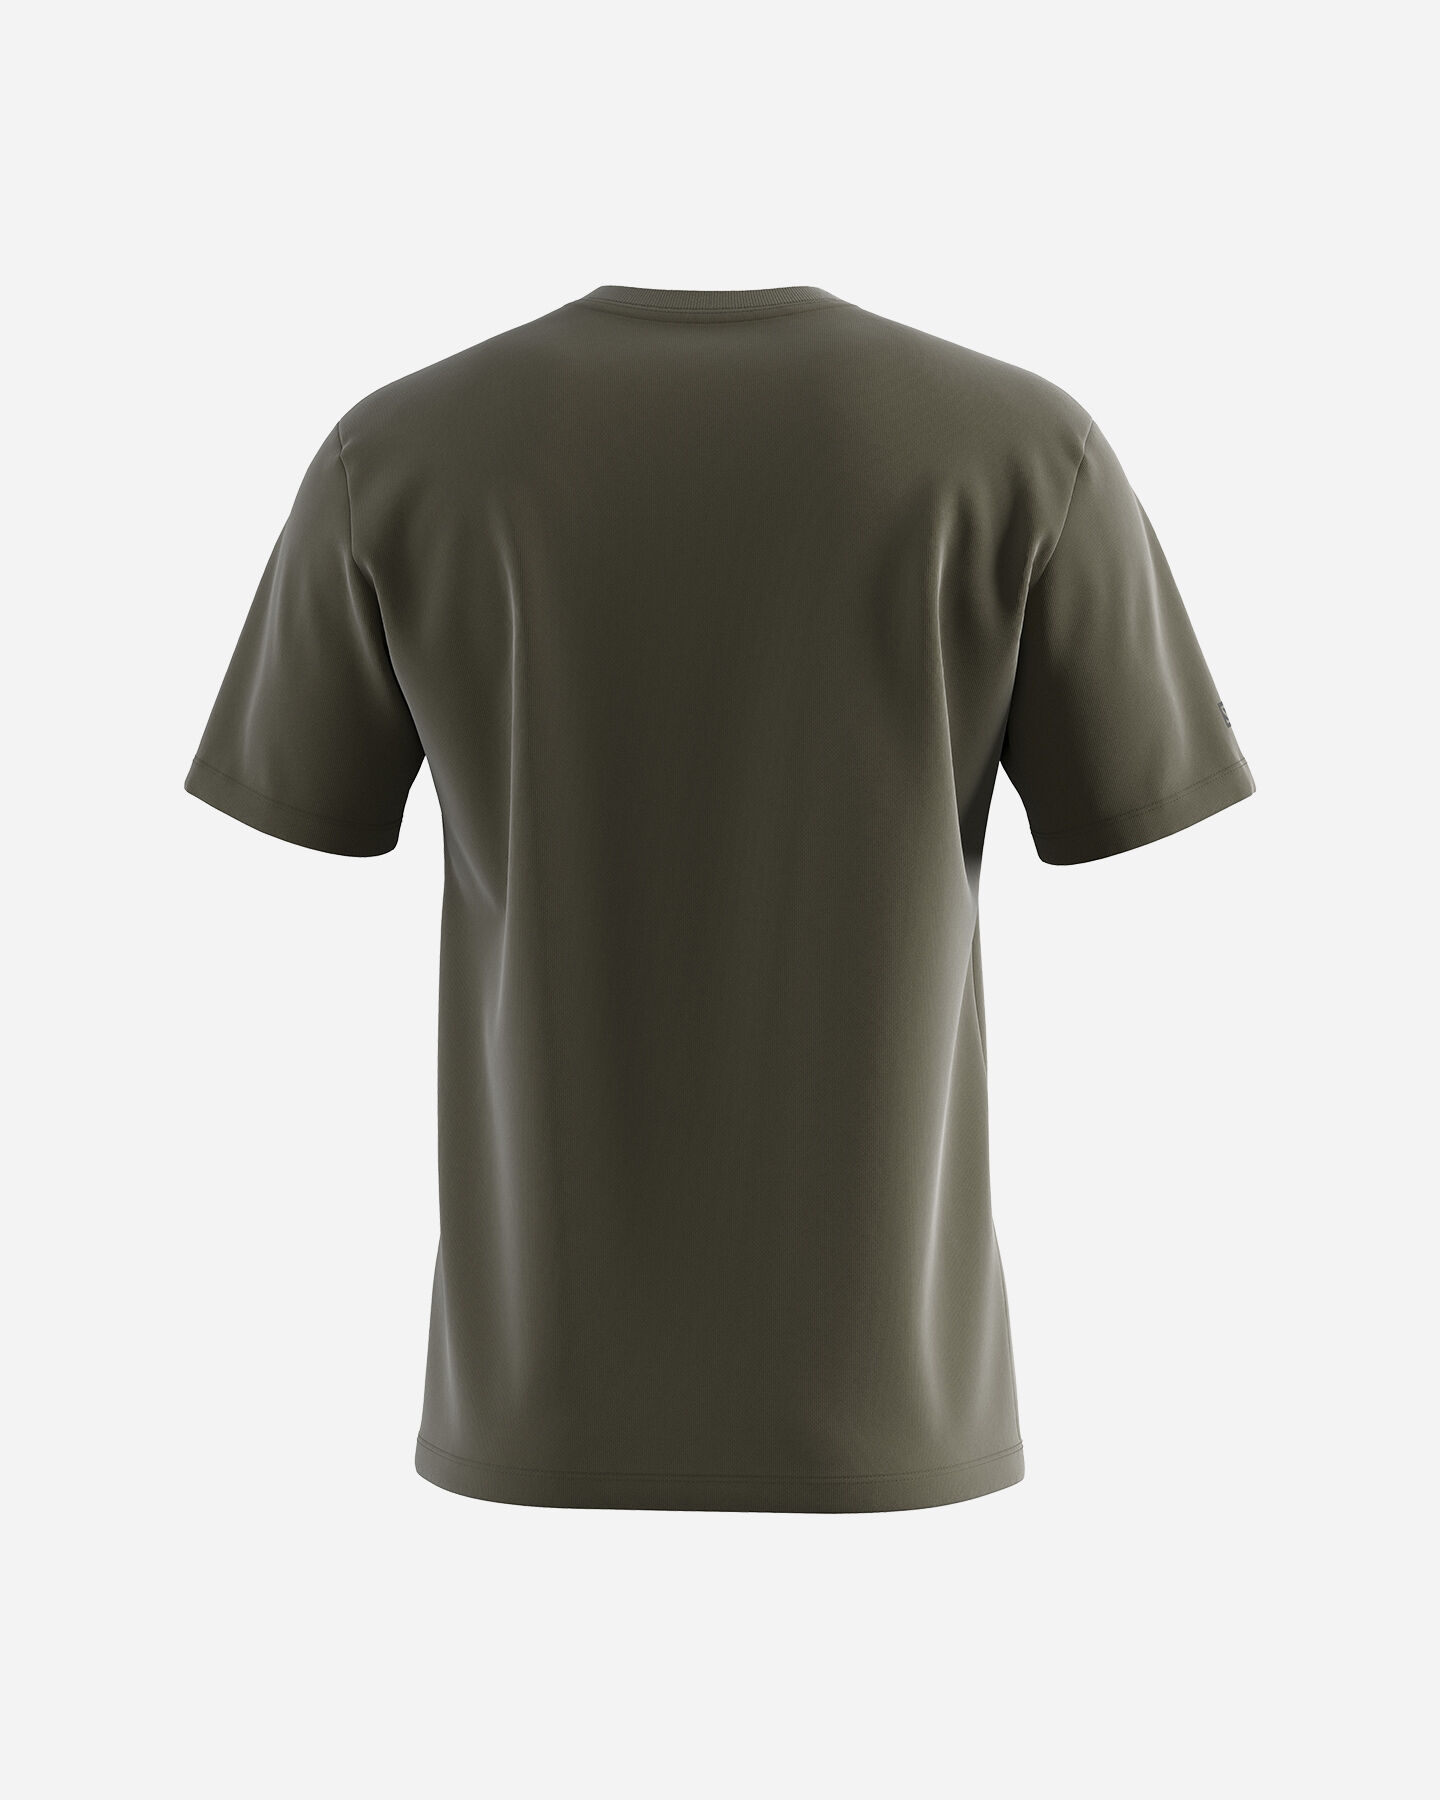  T-Shirt SALOMON OUTLIFE MOUNTAIN M S5407815|UNI|S scatto 1